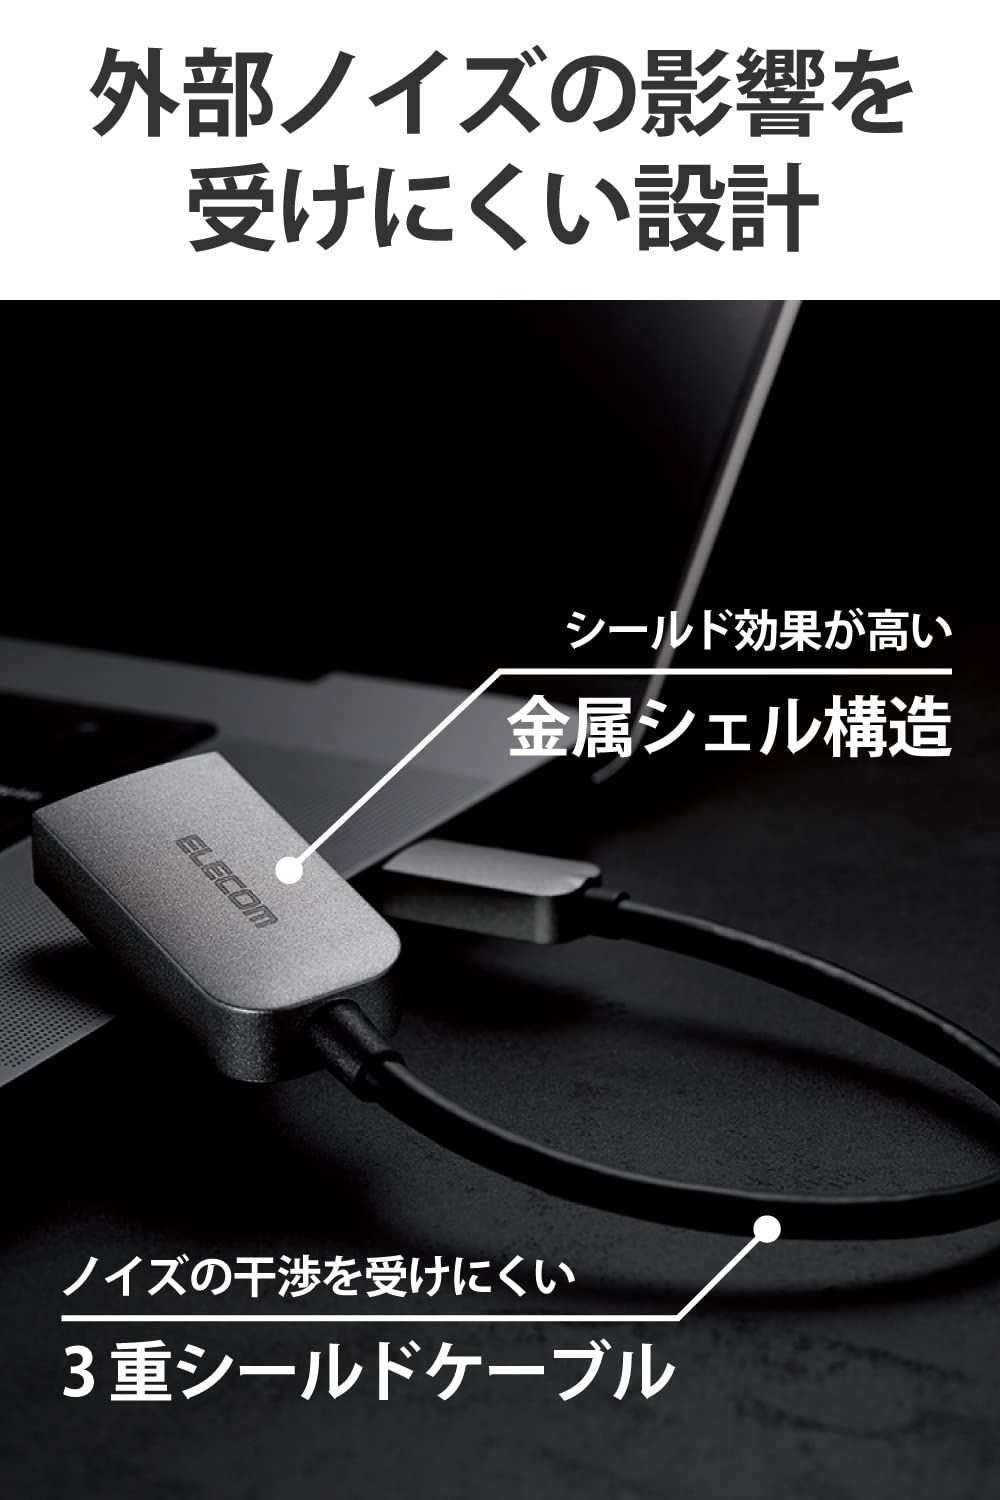 特価商品】変換アダプター HDMI 4K60Hz (USB C USB-C to HDMI 変換アダプタ) エレコム 0.15m シルバー  ECAD-CHDMIQGM2 Zacart メルカリ